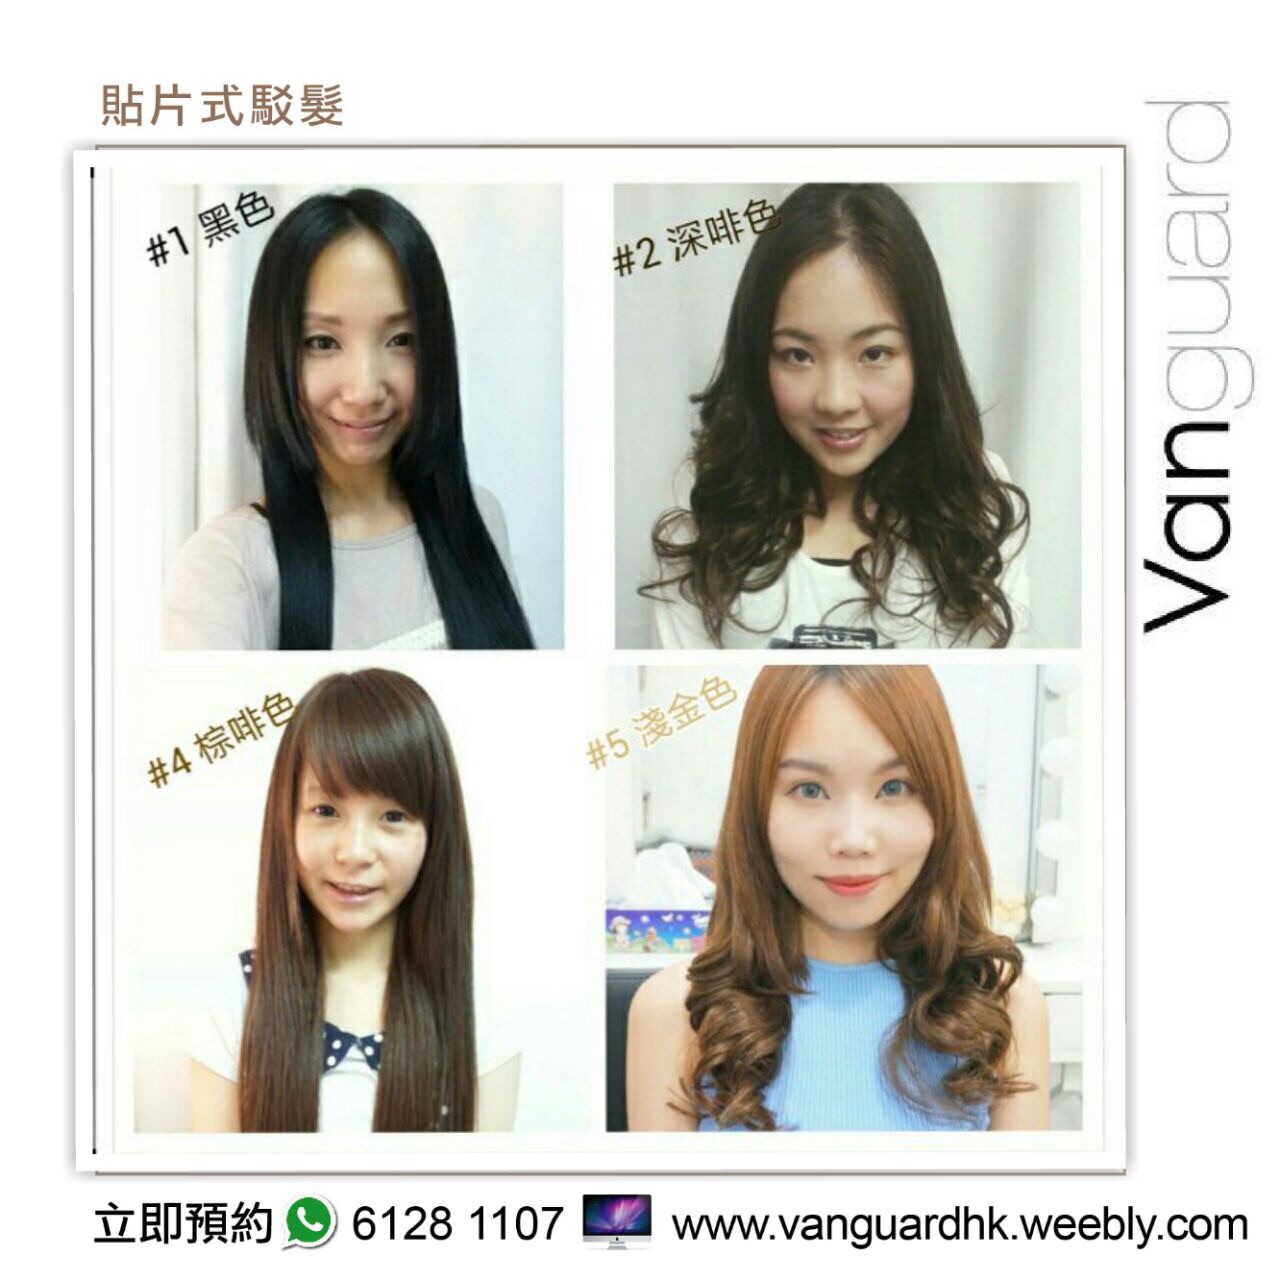 植发/驳发: Vanguard HK 無痕貼片式駁髮專門店